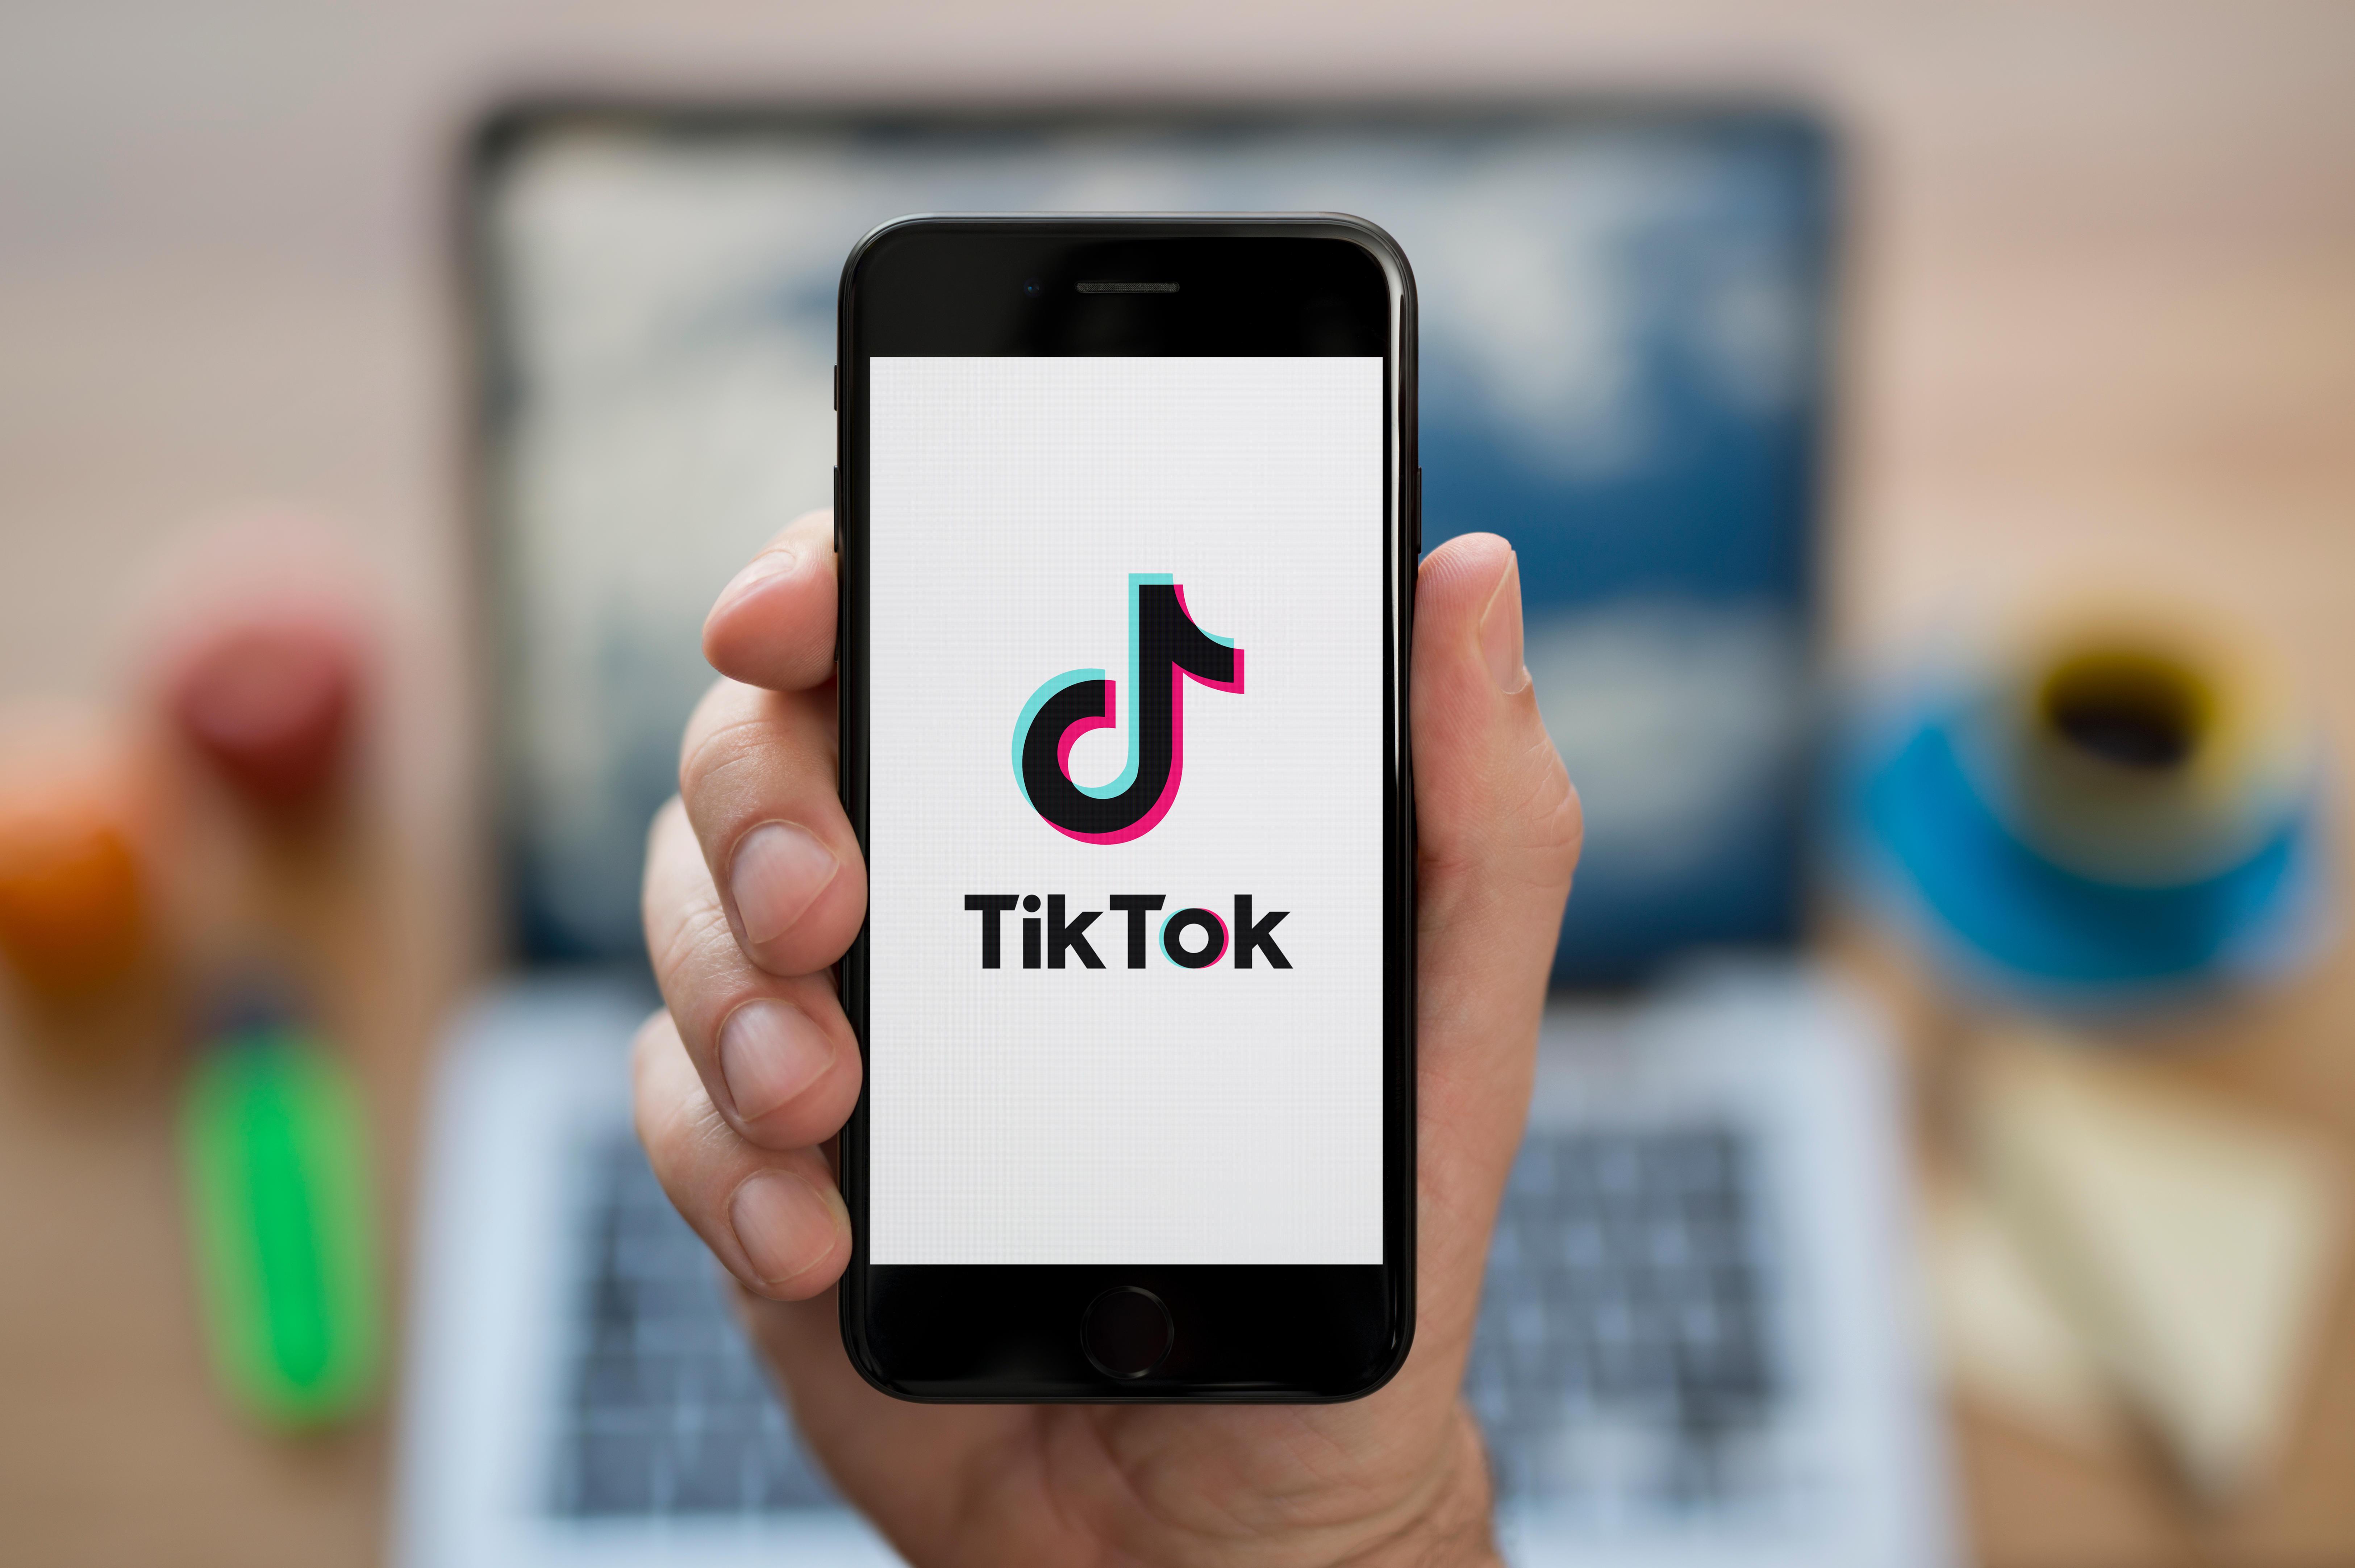   Tin đồn lan truyền trên mạng cho thấy TikTok sẽ ngừng hoạt động vào ngày 25 tháng 1